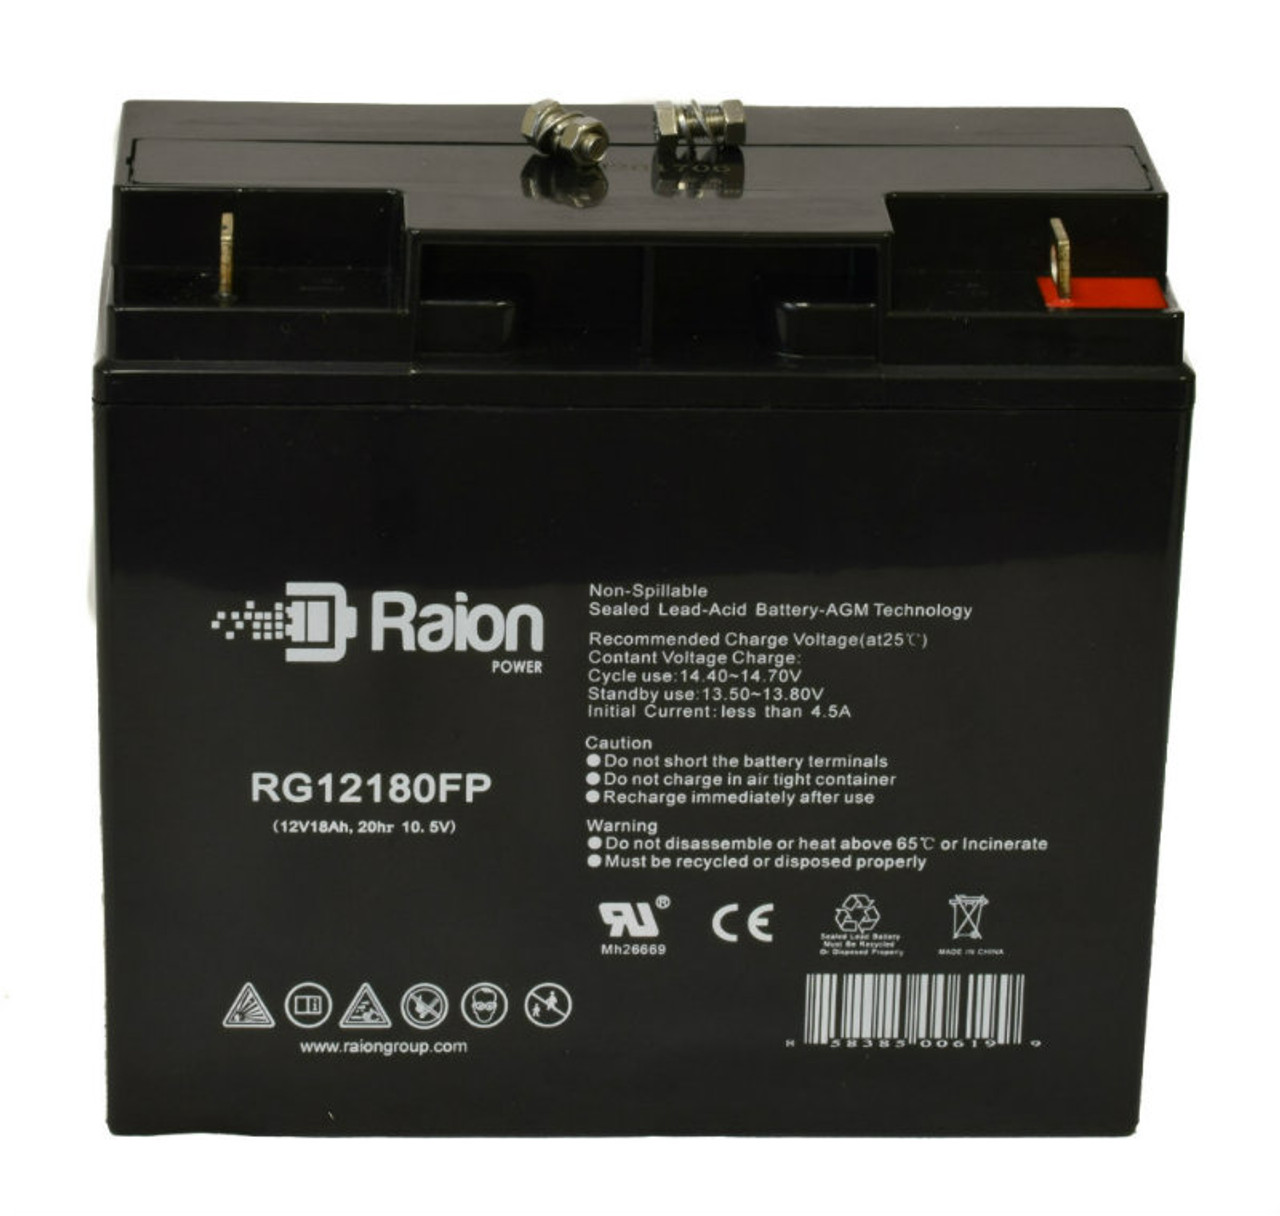 Raion Power RG12180FP 12V 18Ah Lead Acid Battery for Zeus PC18-12NB